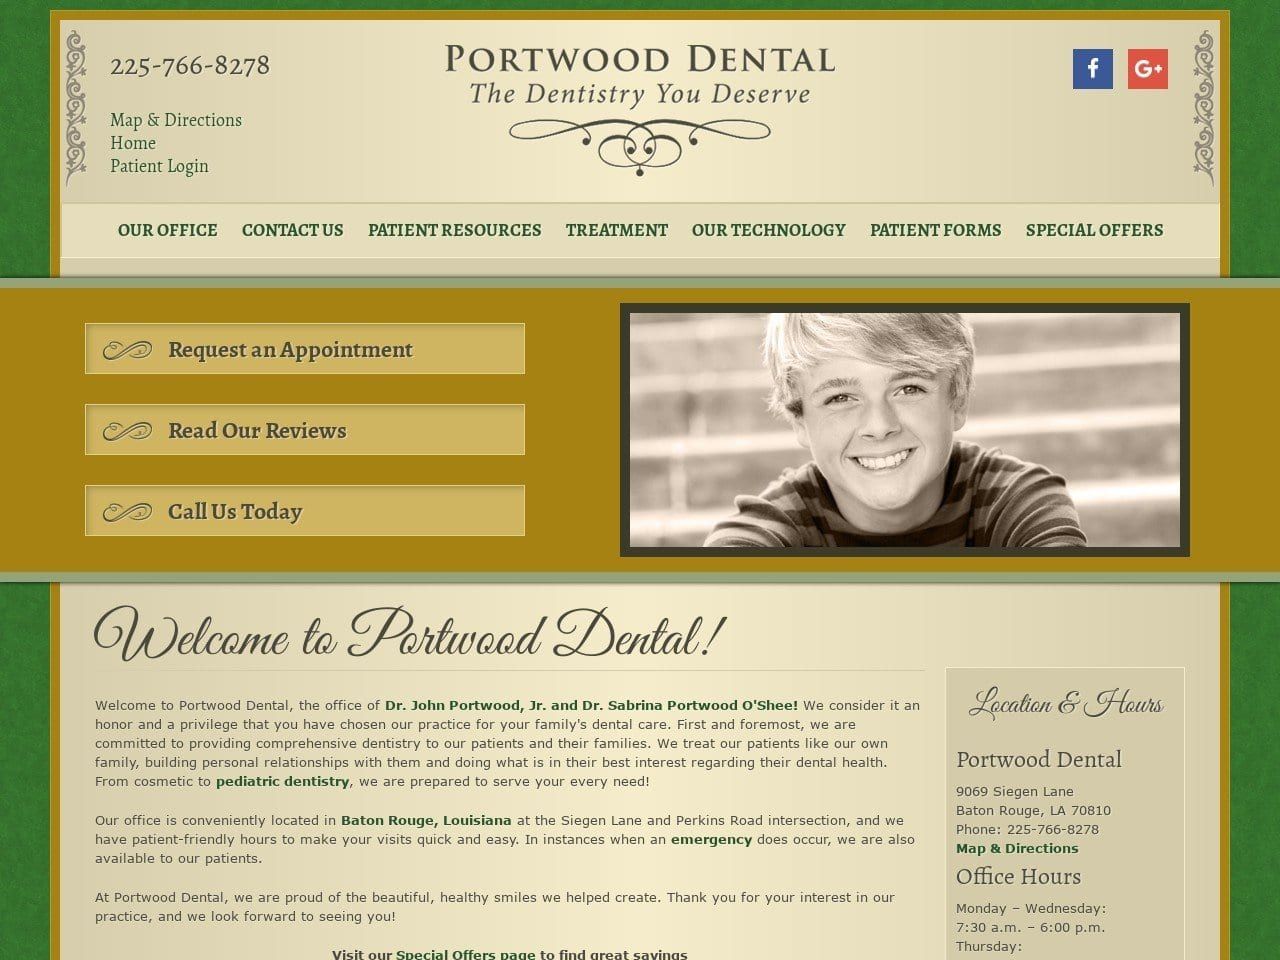 Portwood Dental Website Screenshot from portwooddental.com